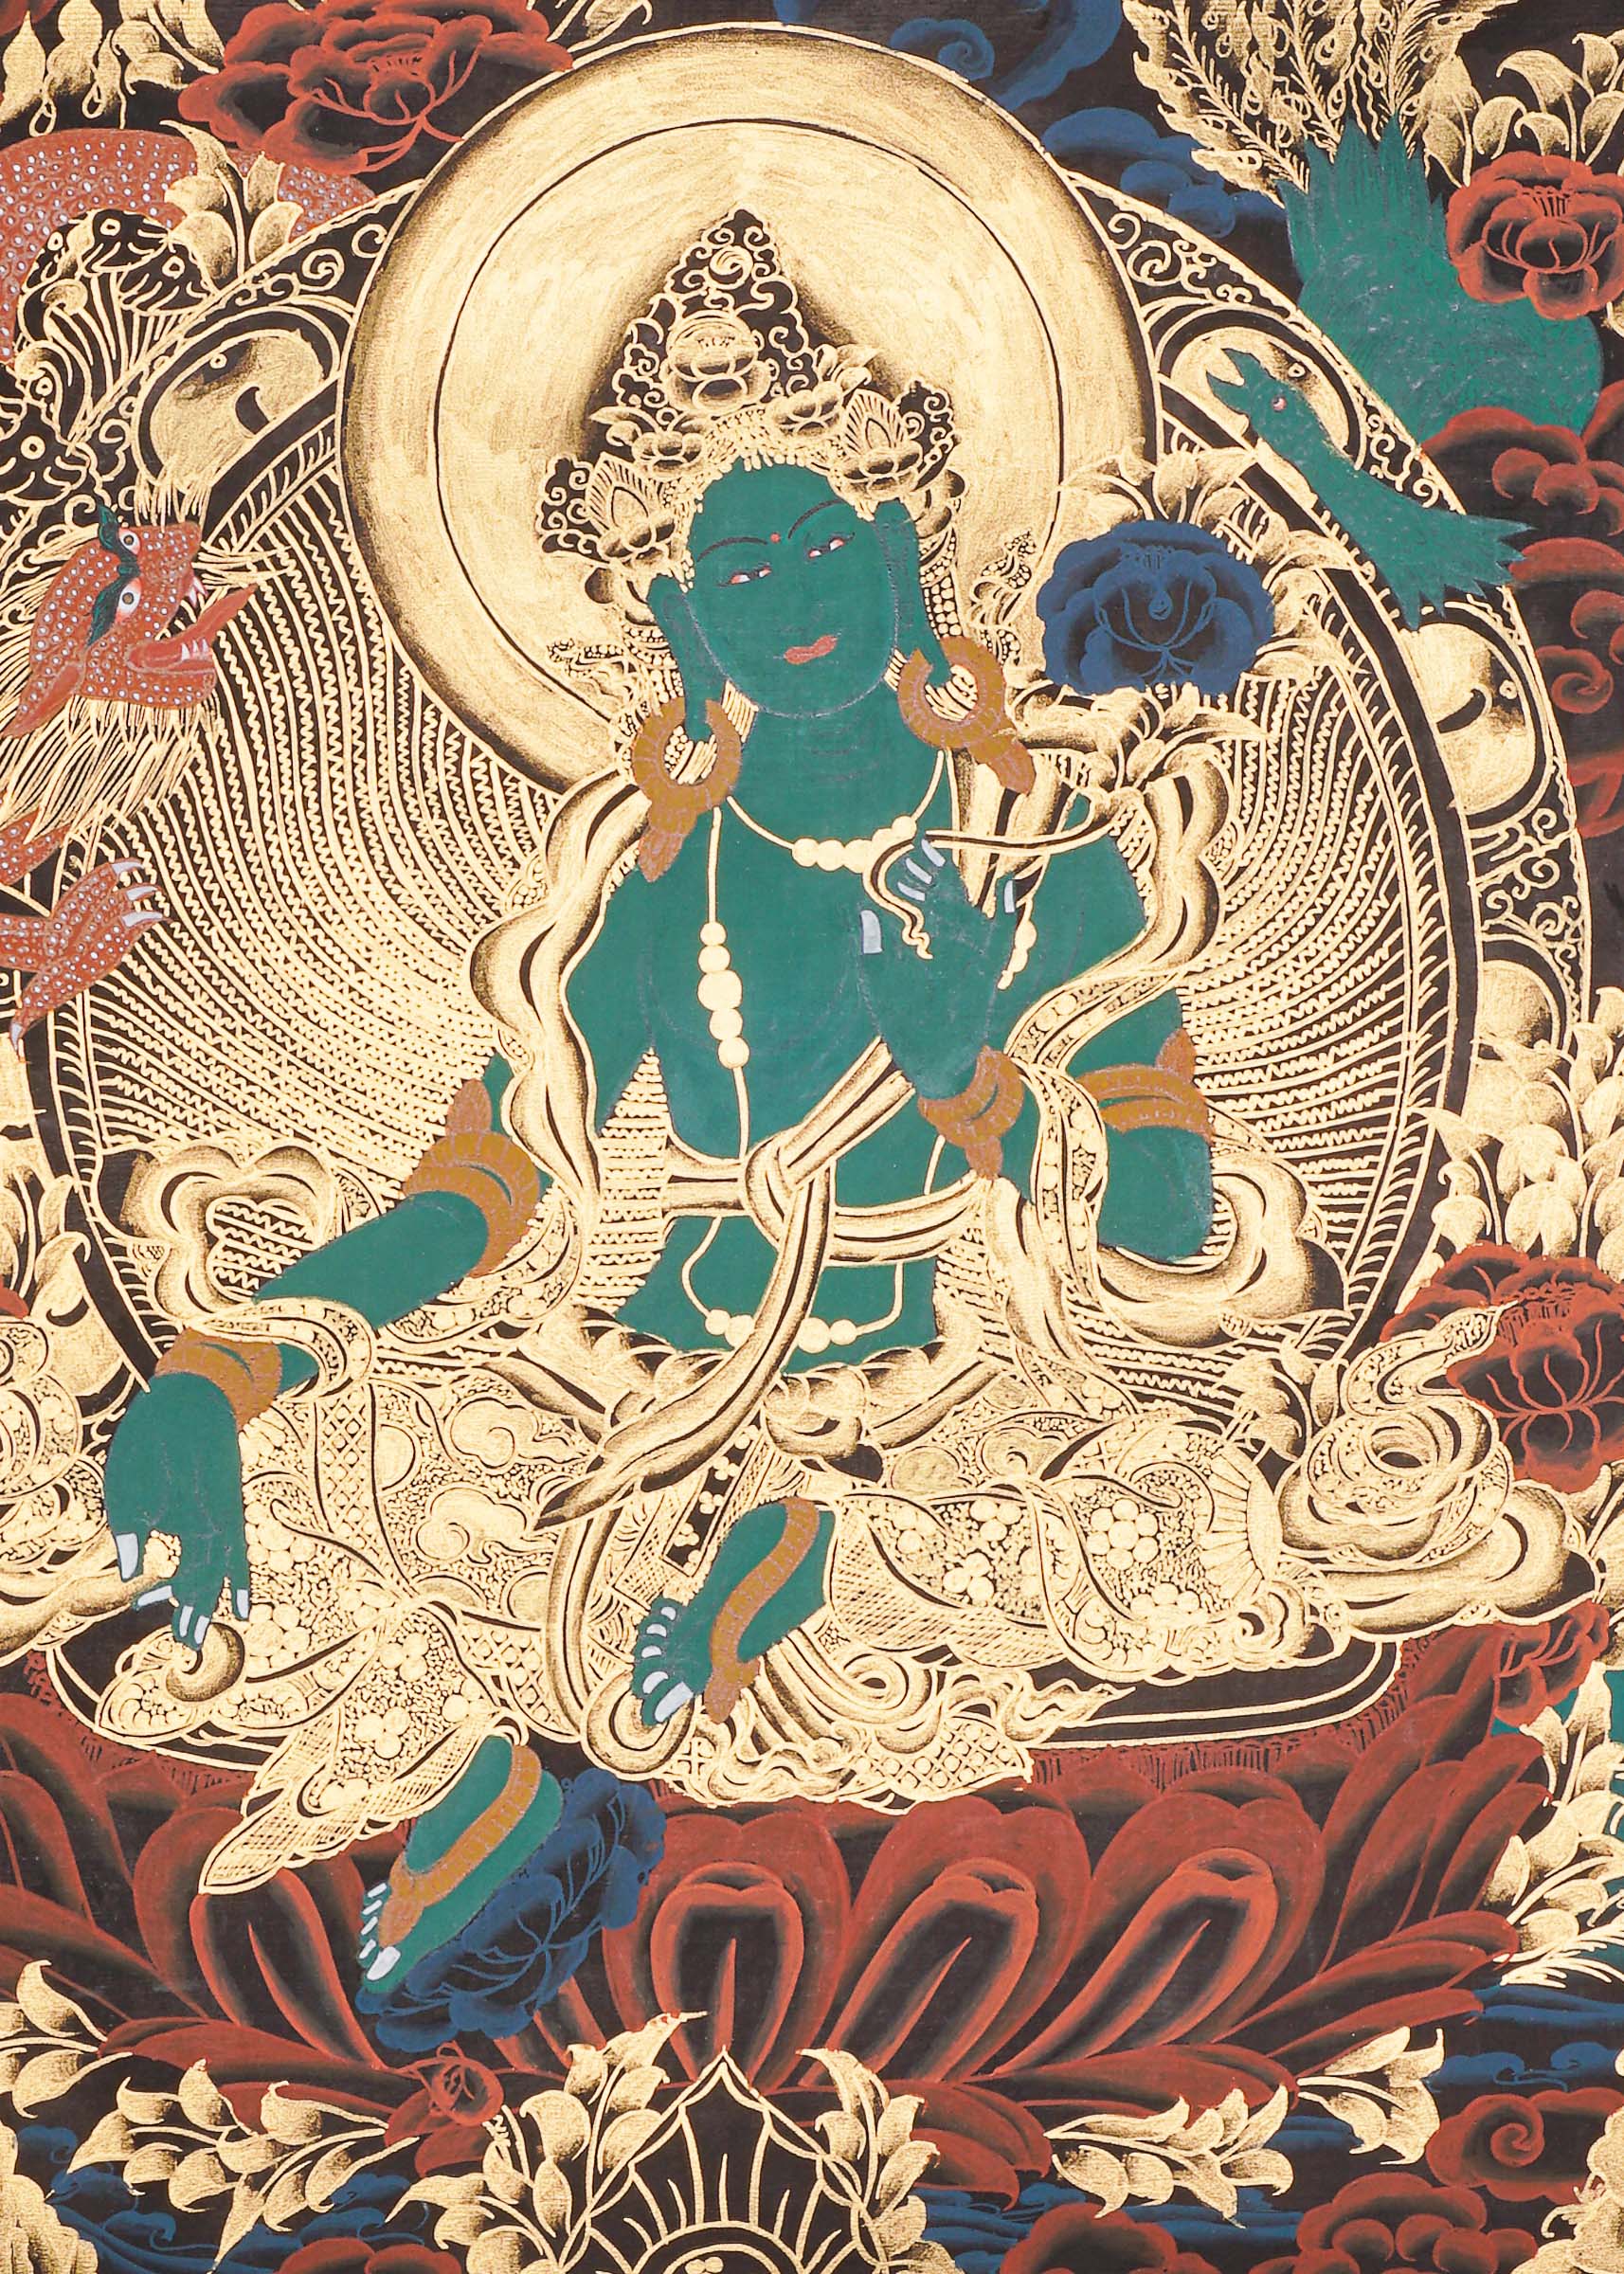 Green Tara Thangka Painting - Tibetan Art